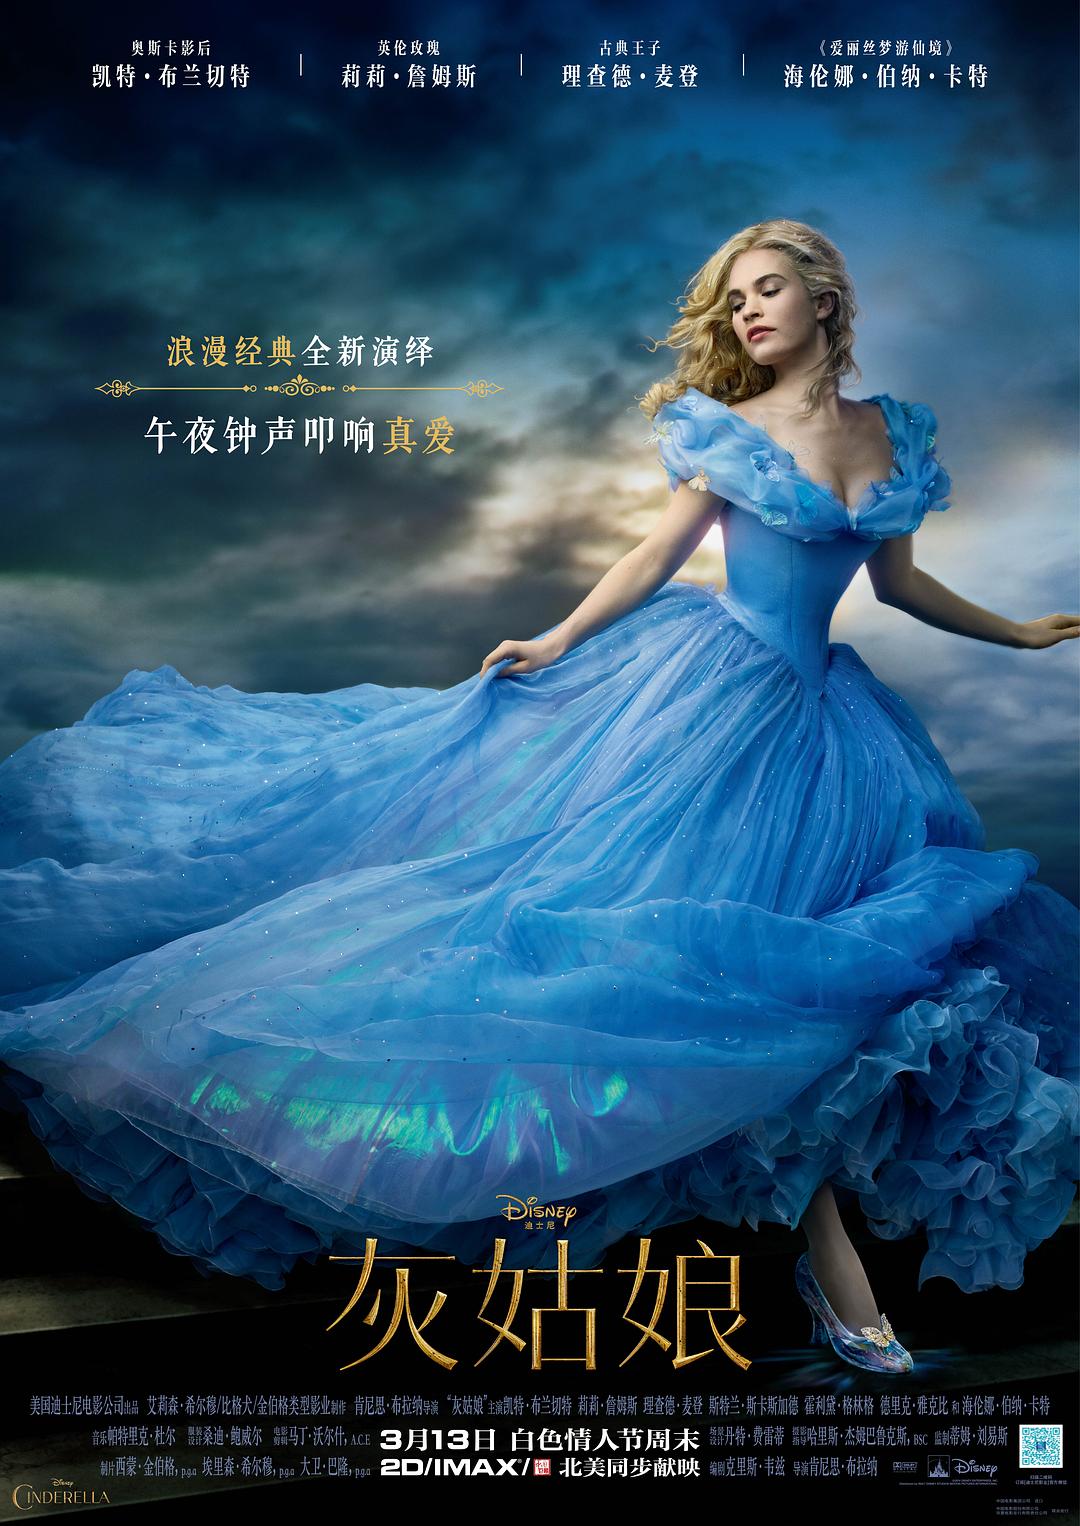 灰姑娘/仙履奇缘 Cinderella.2015.2160p.BluRay.HEVC.TrueHD.7.1.Atmos-BHD 57.18GB-1.png